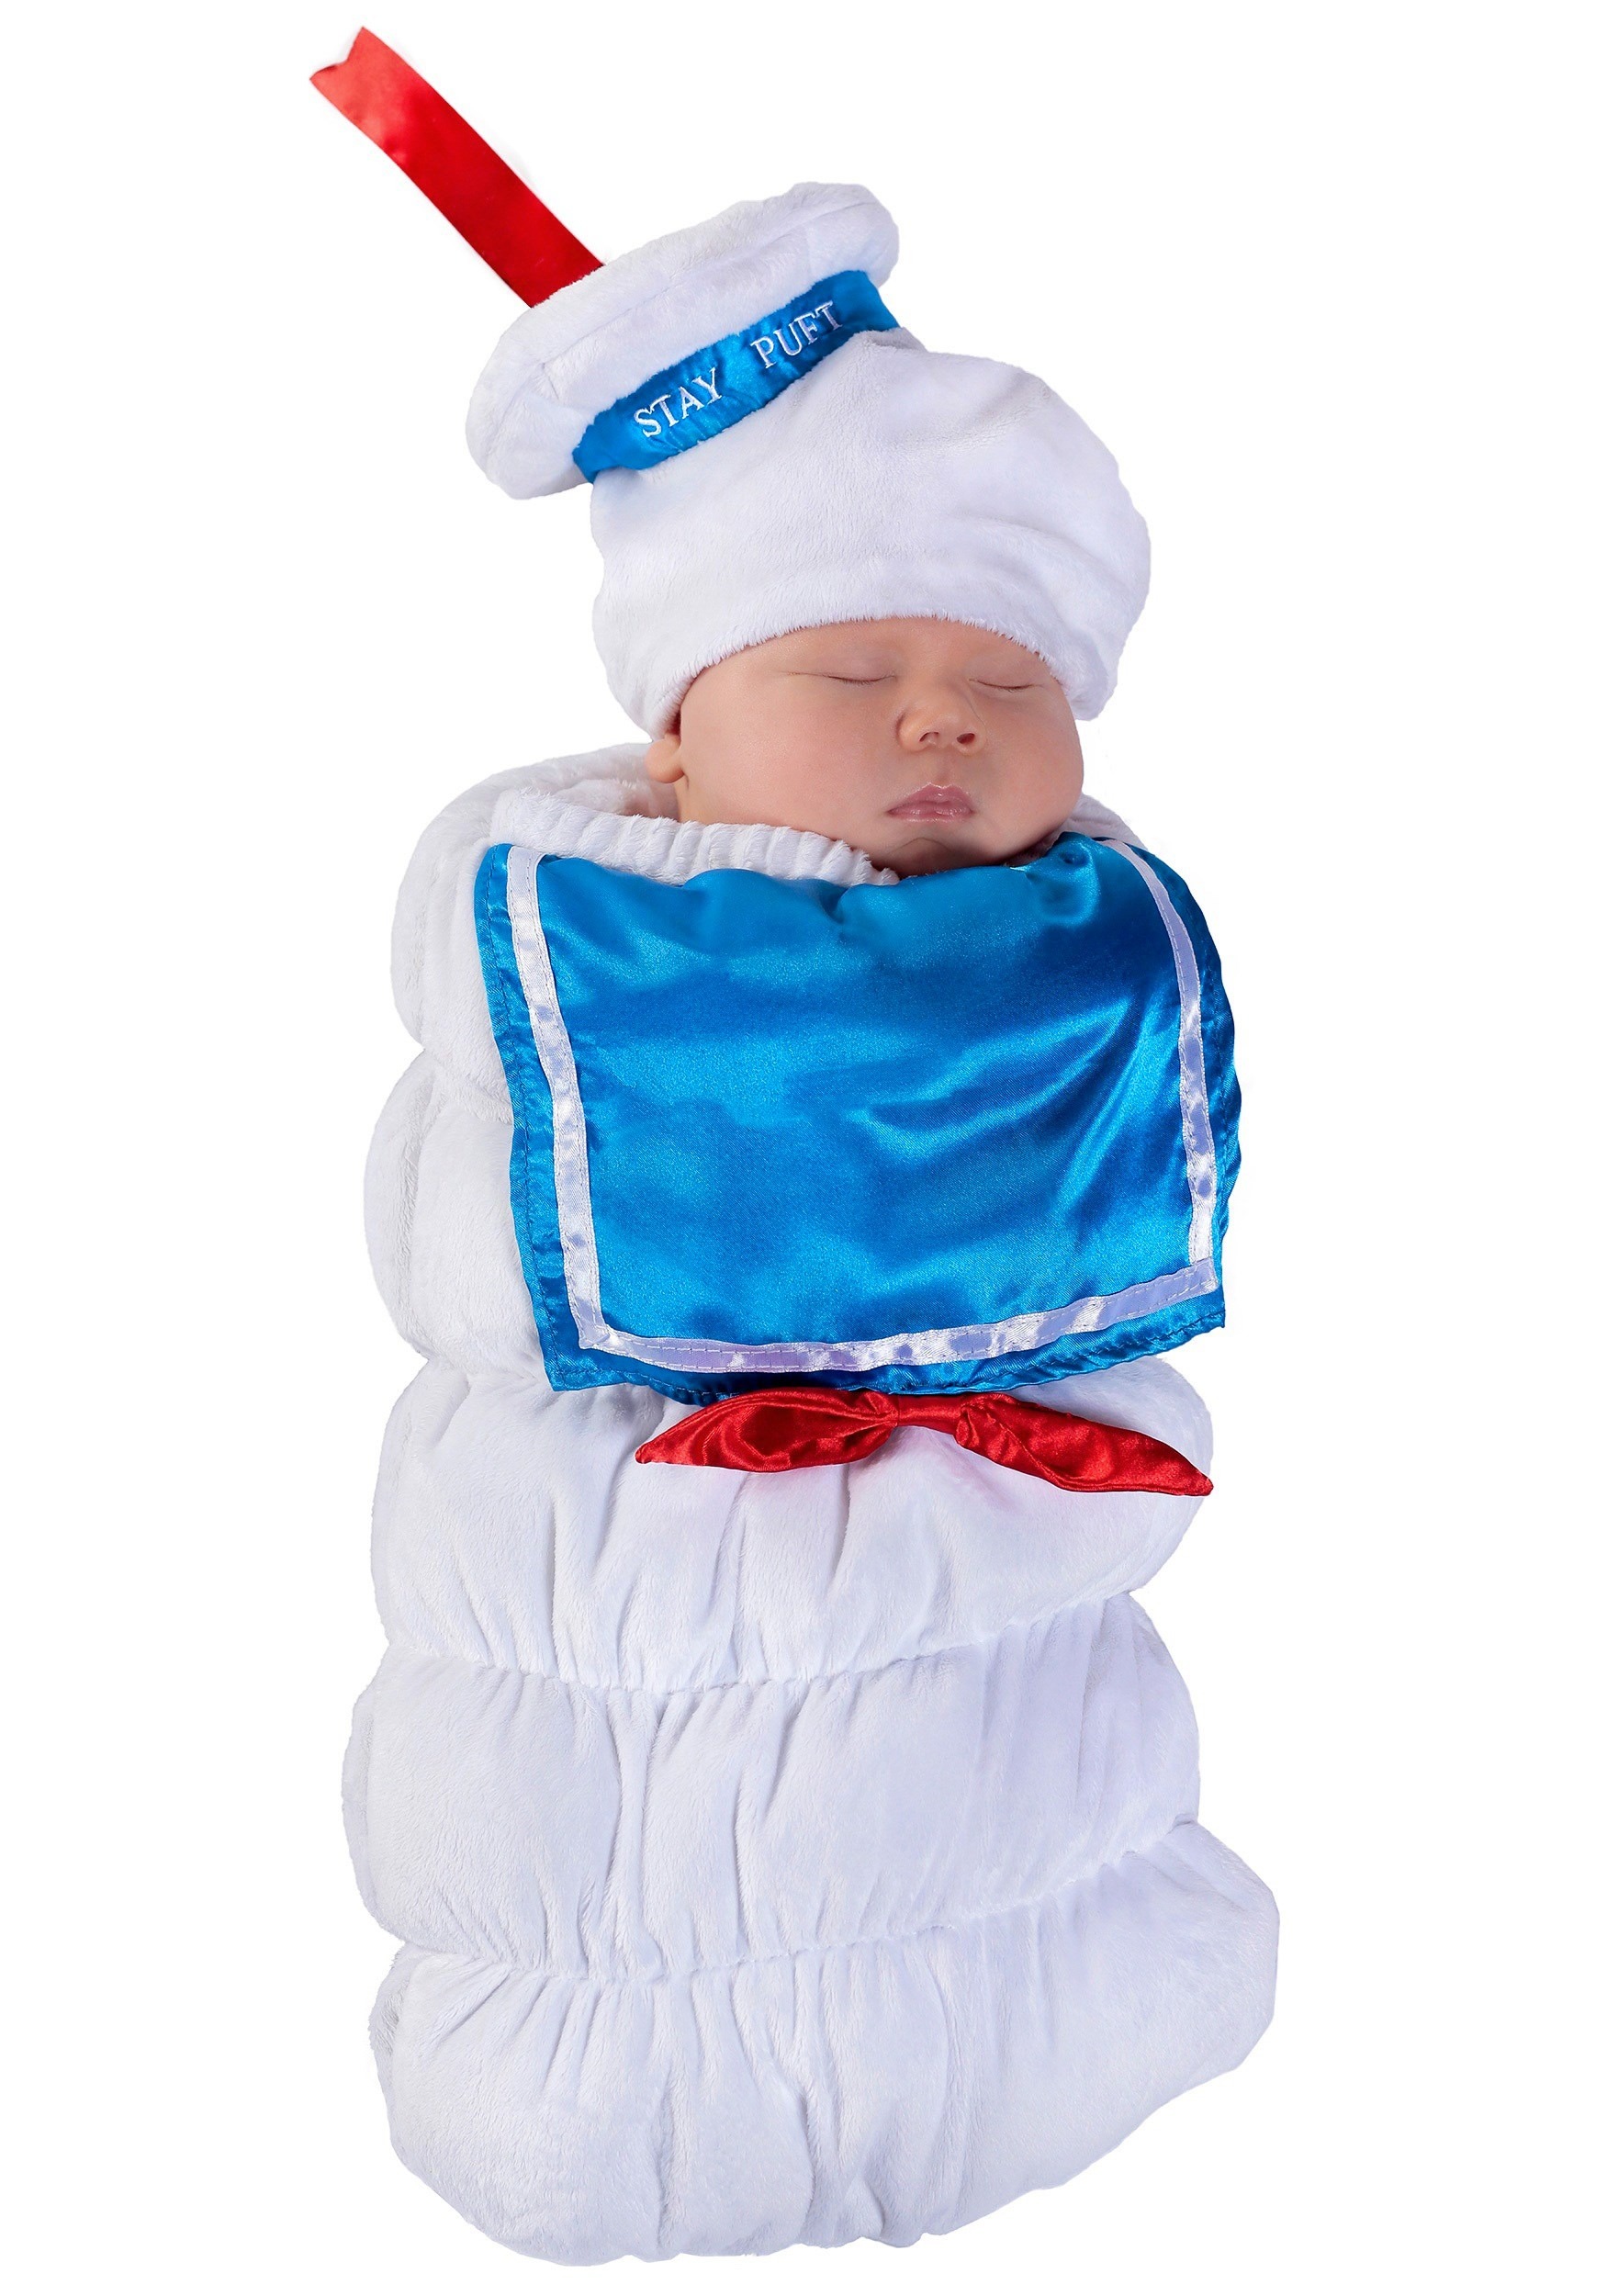 Disfraz de Marshmallow cazafantasmas para niño